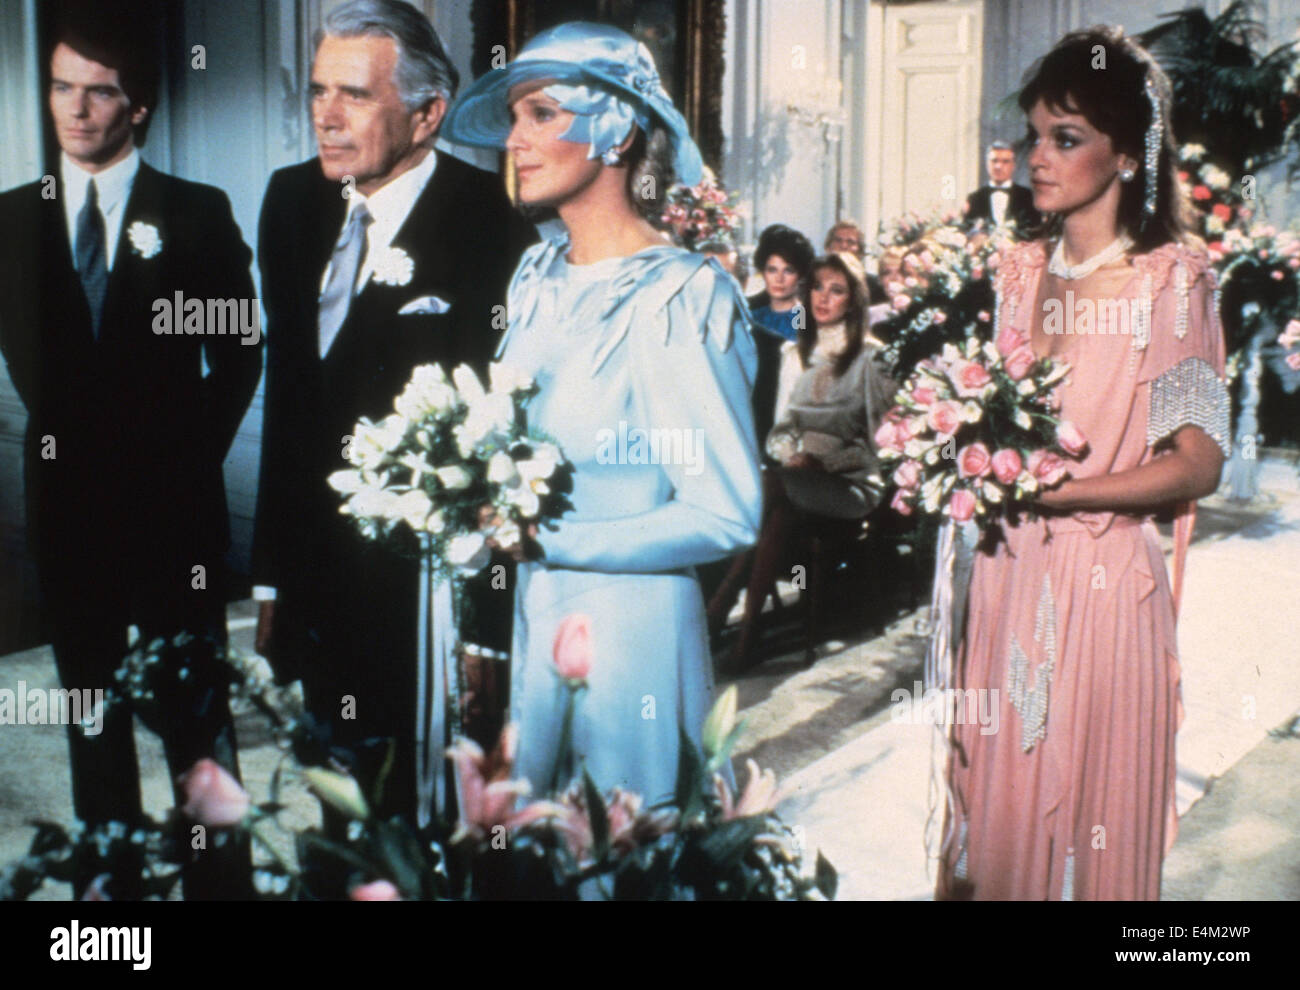 Dynastie Aaron Spelling US-Fernsehserie (1981-89) mit der Bildschirm-Hochzeit von John Forsythe und Linda Evans Stockfoto